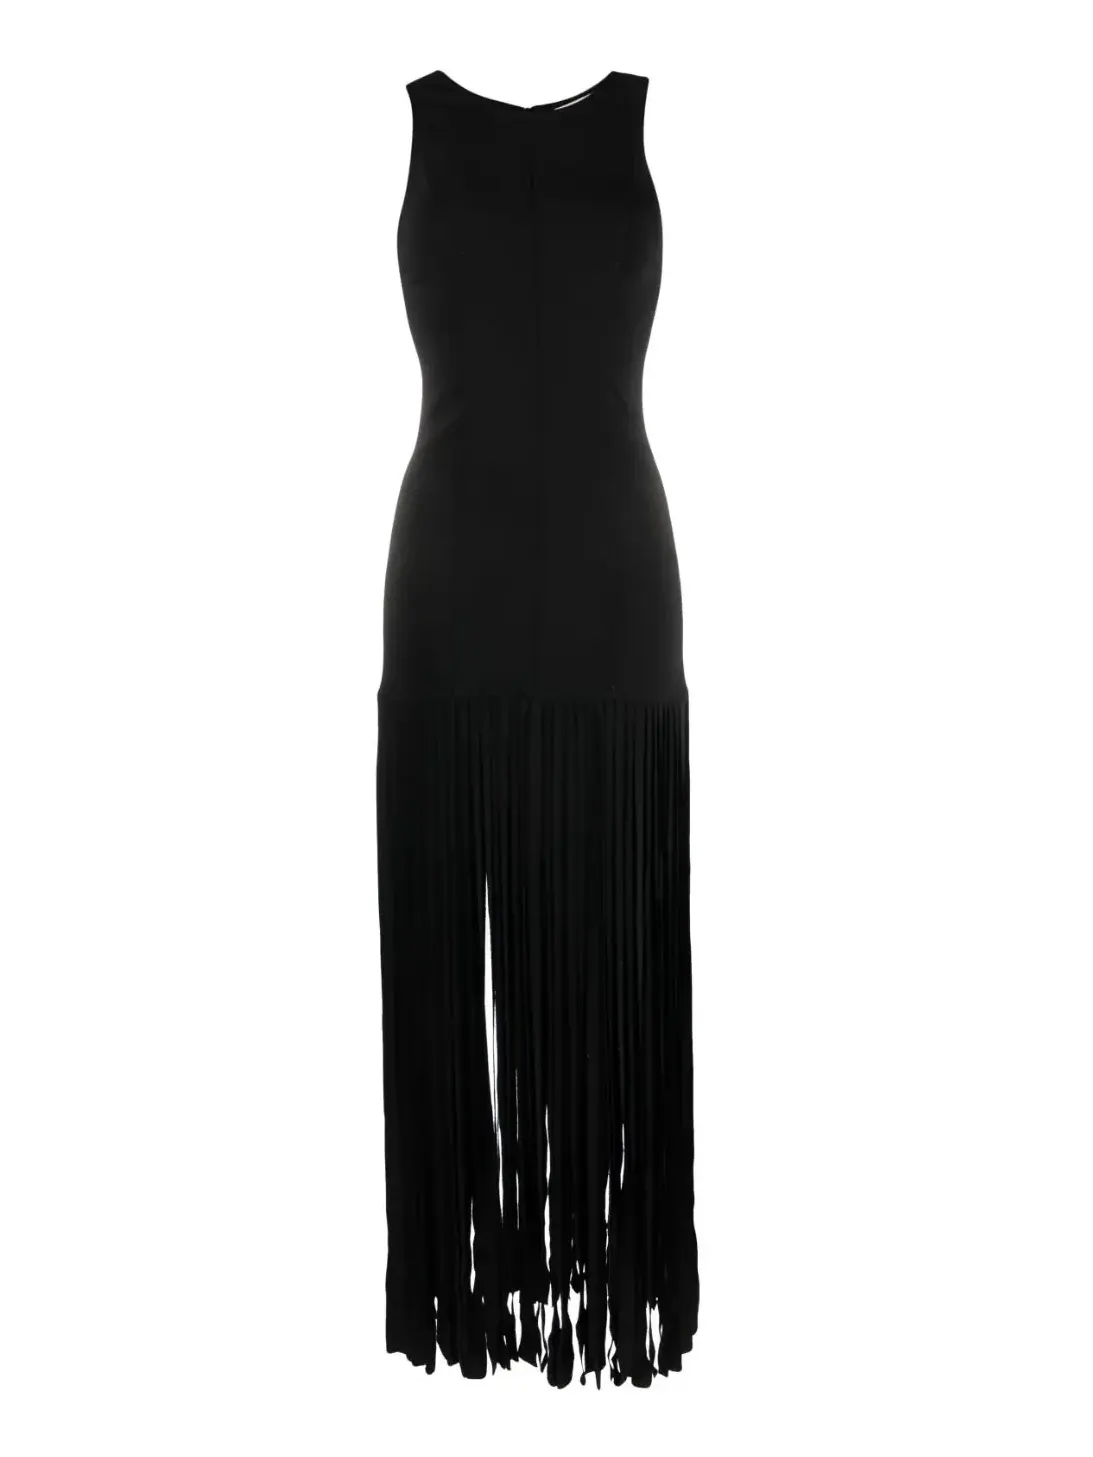 Stretch cady crepe sleeveless fringed dress, black